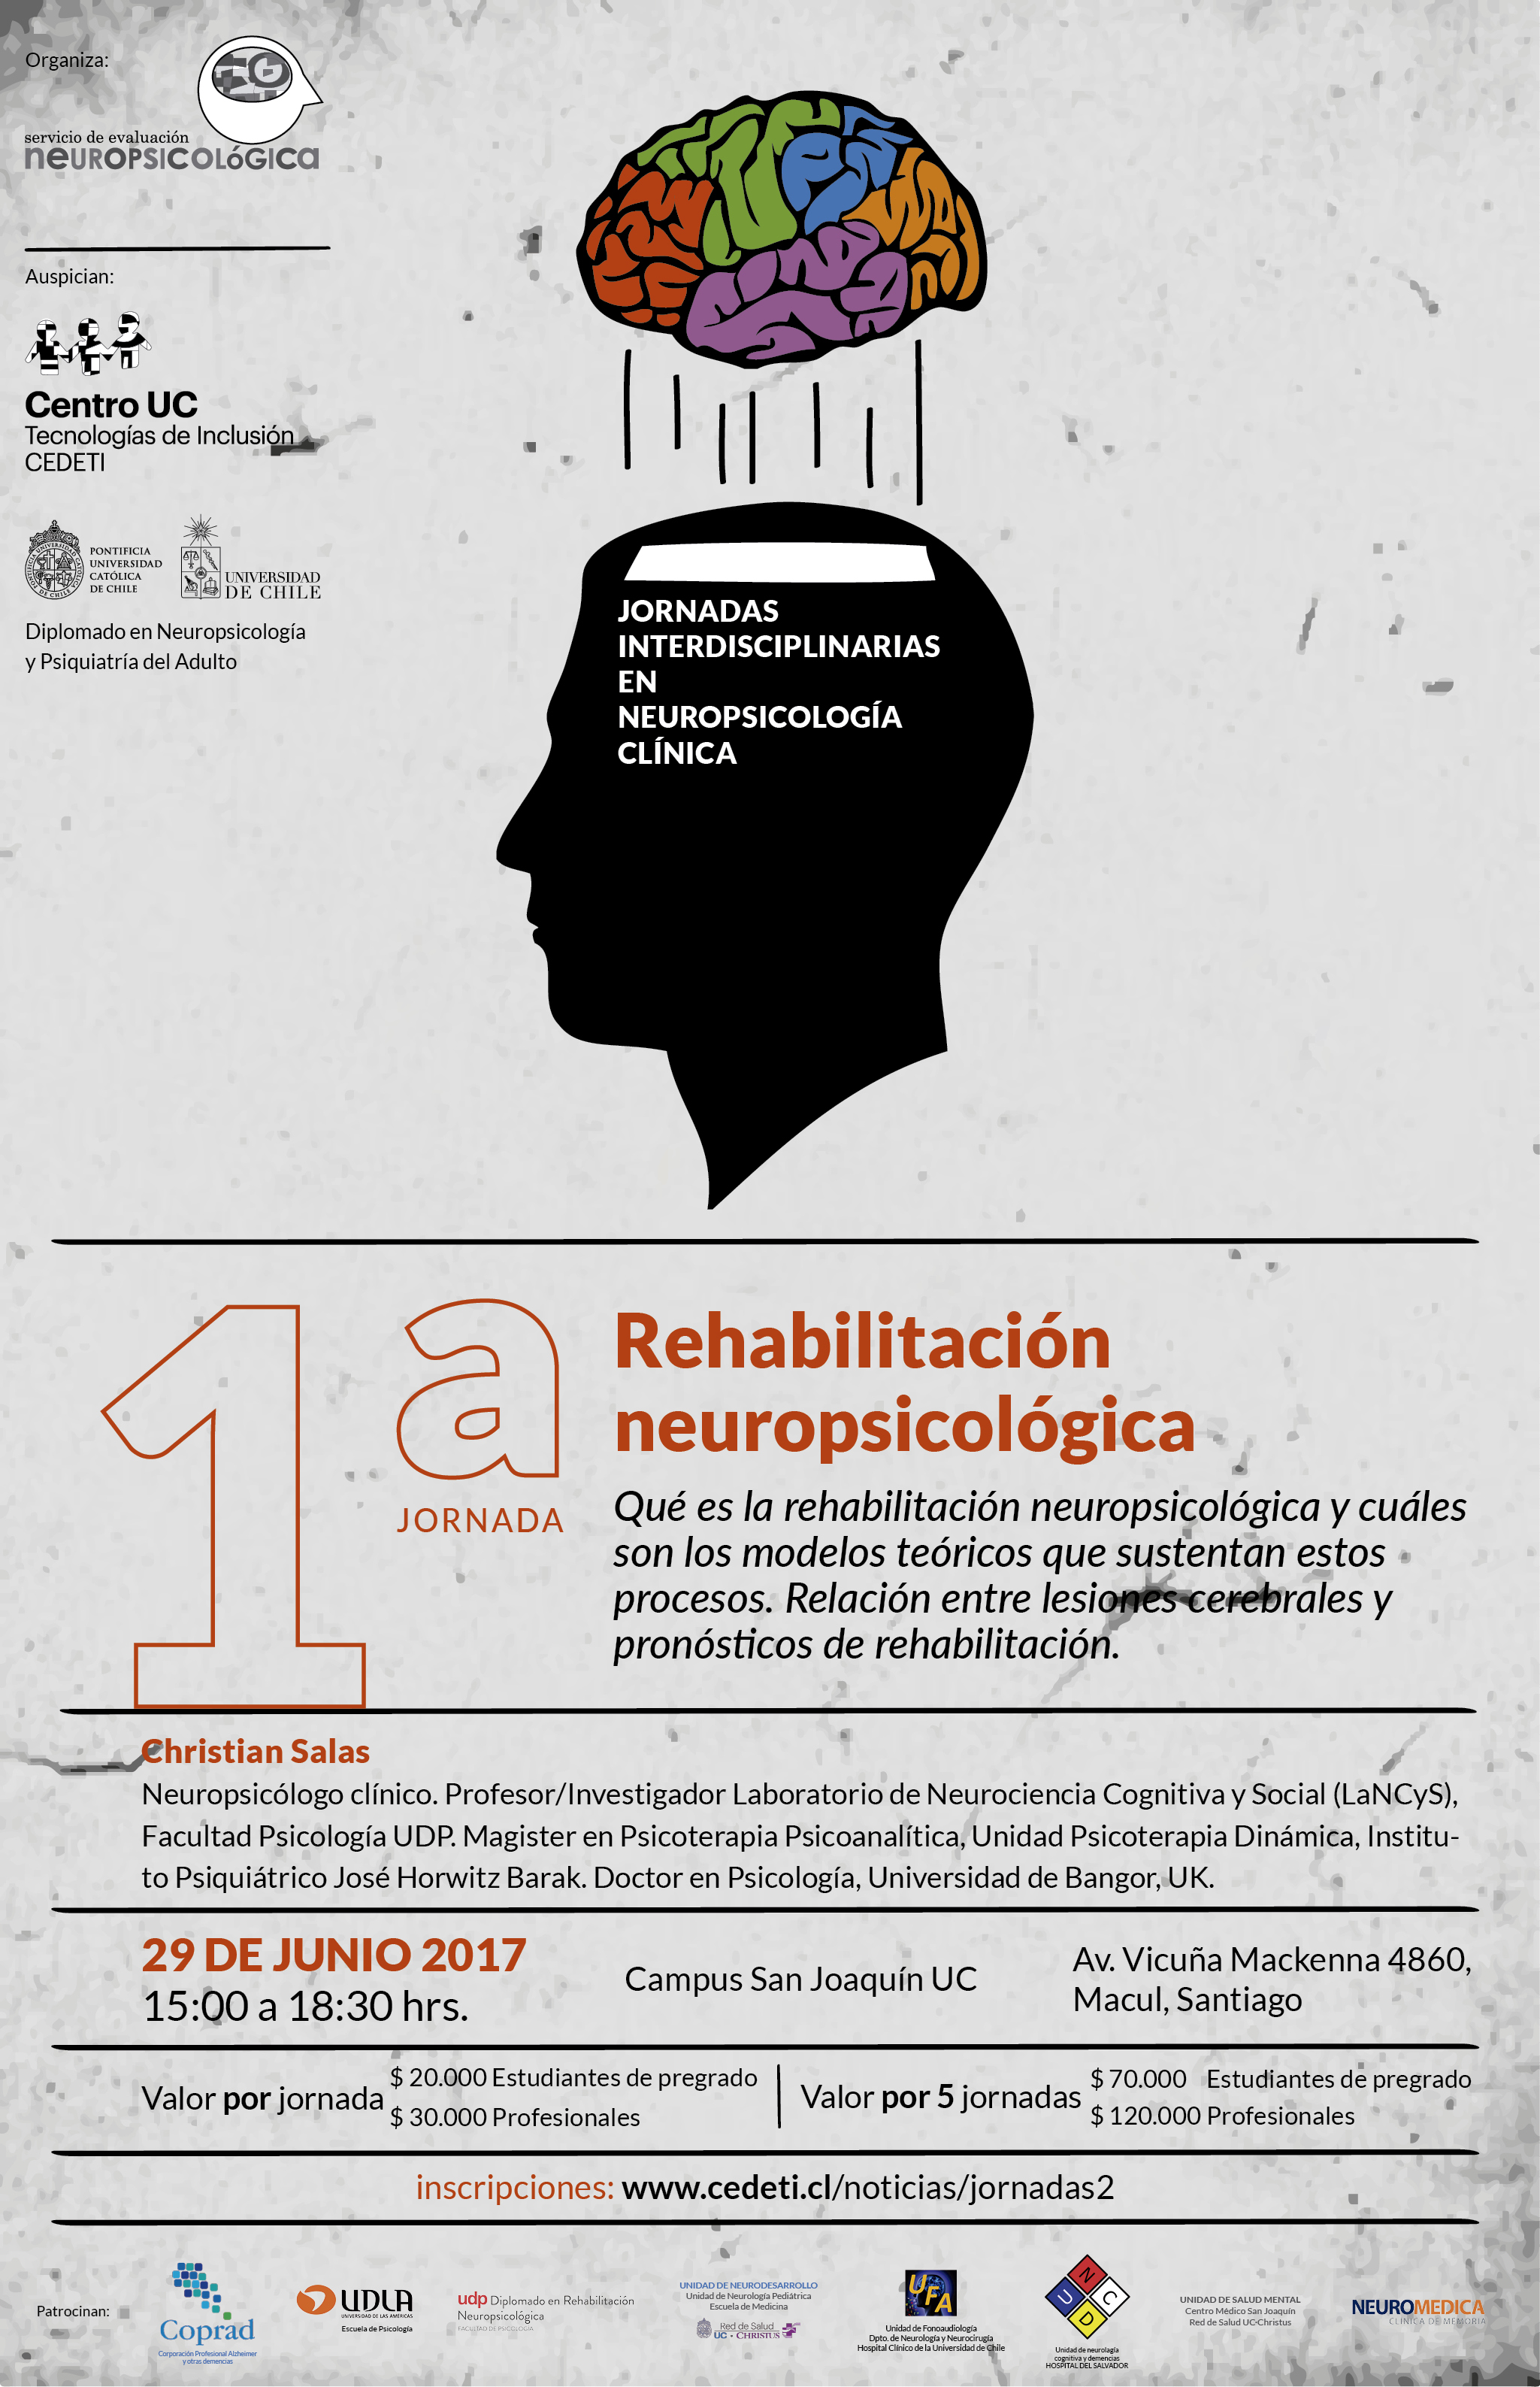 1. Rehabilitación neuropsicológica. Ch. Salas